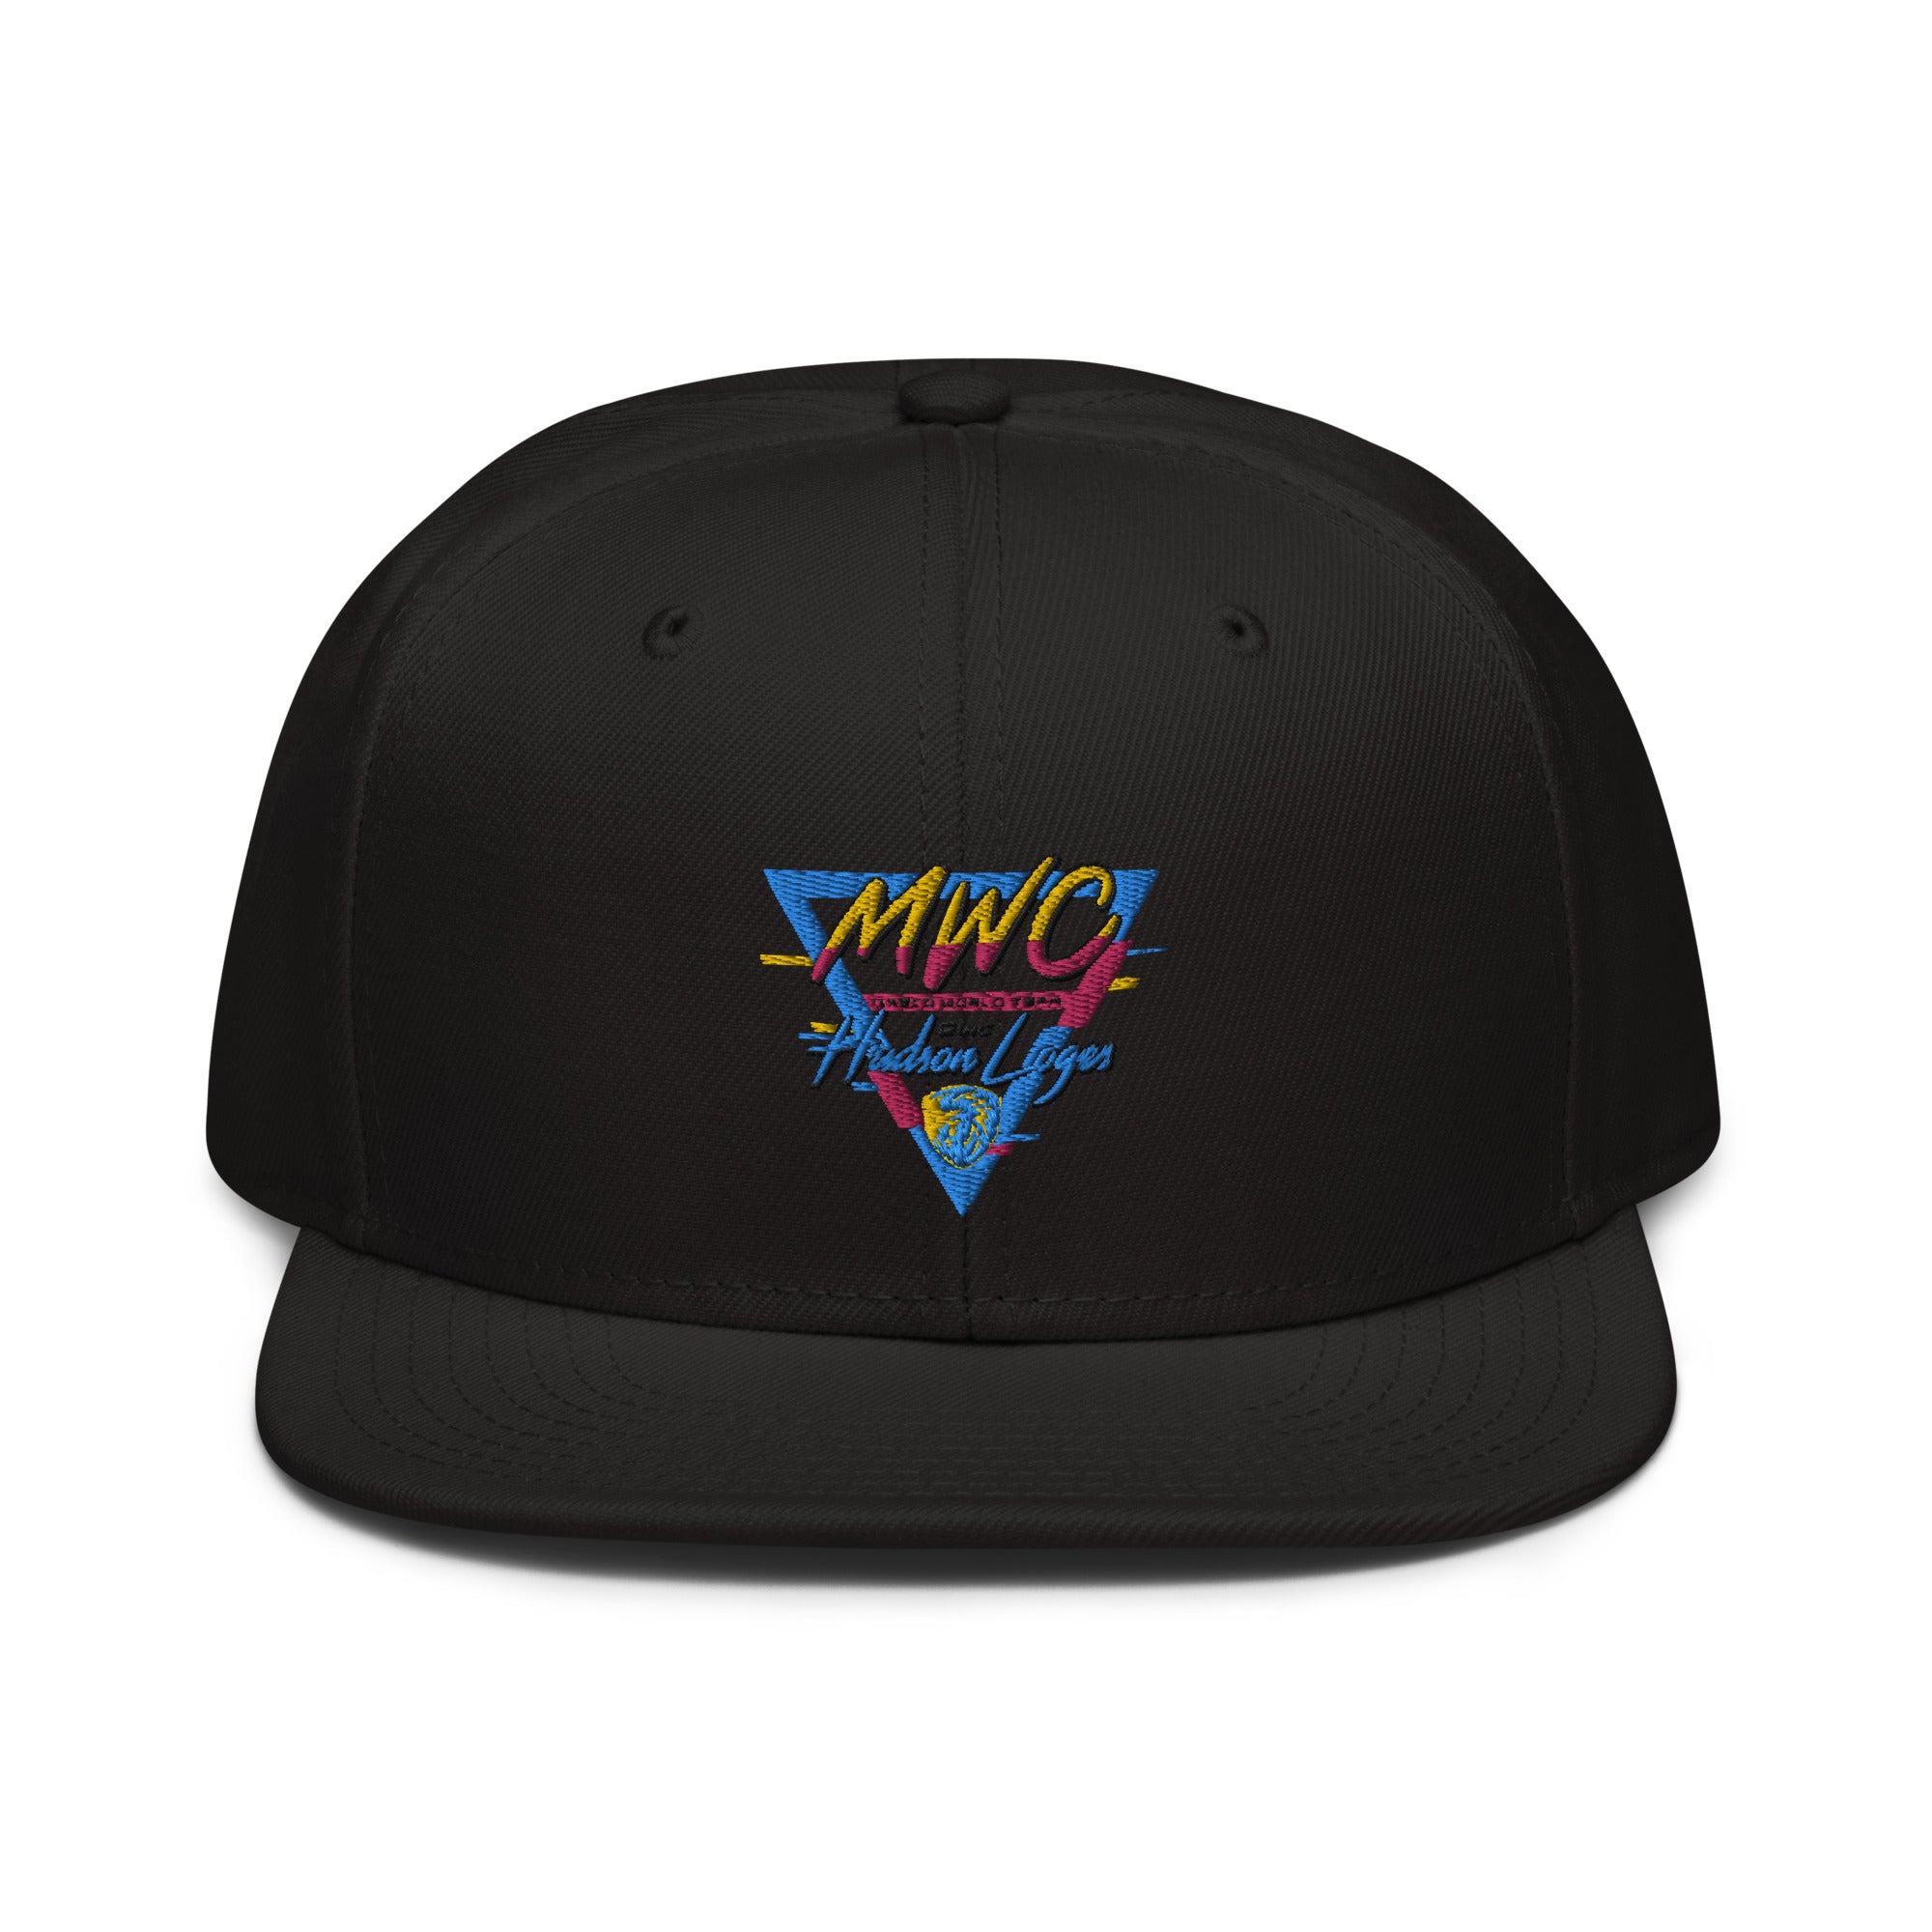 Hudson Loges - MWC Snapback Hat